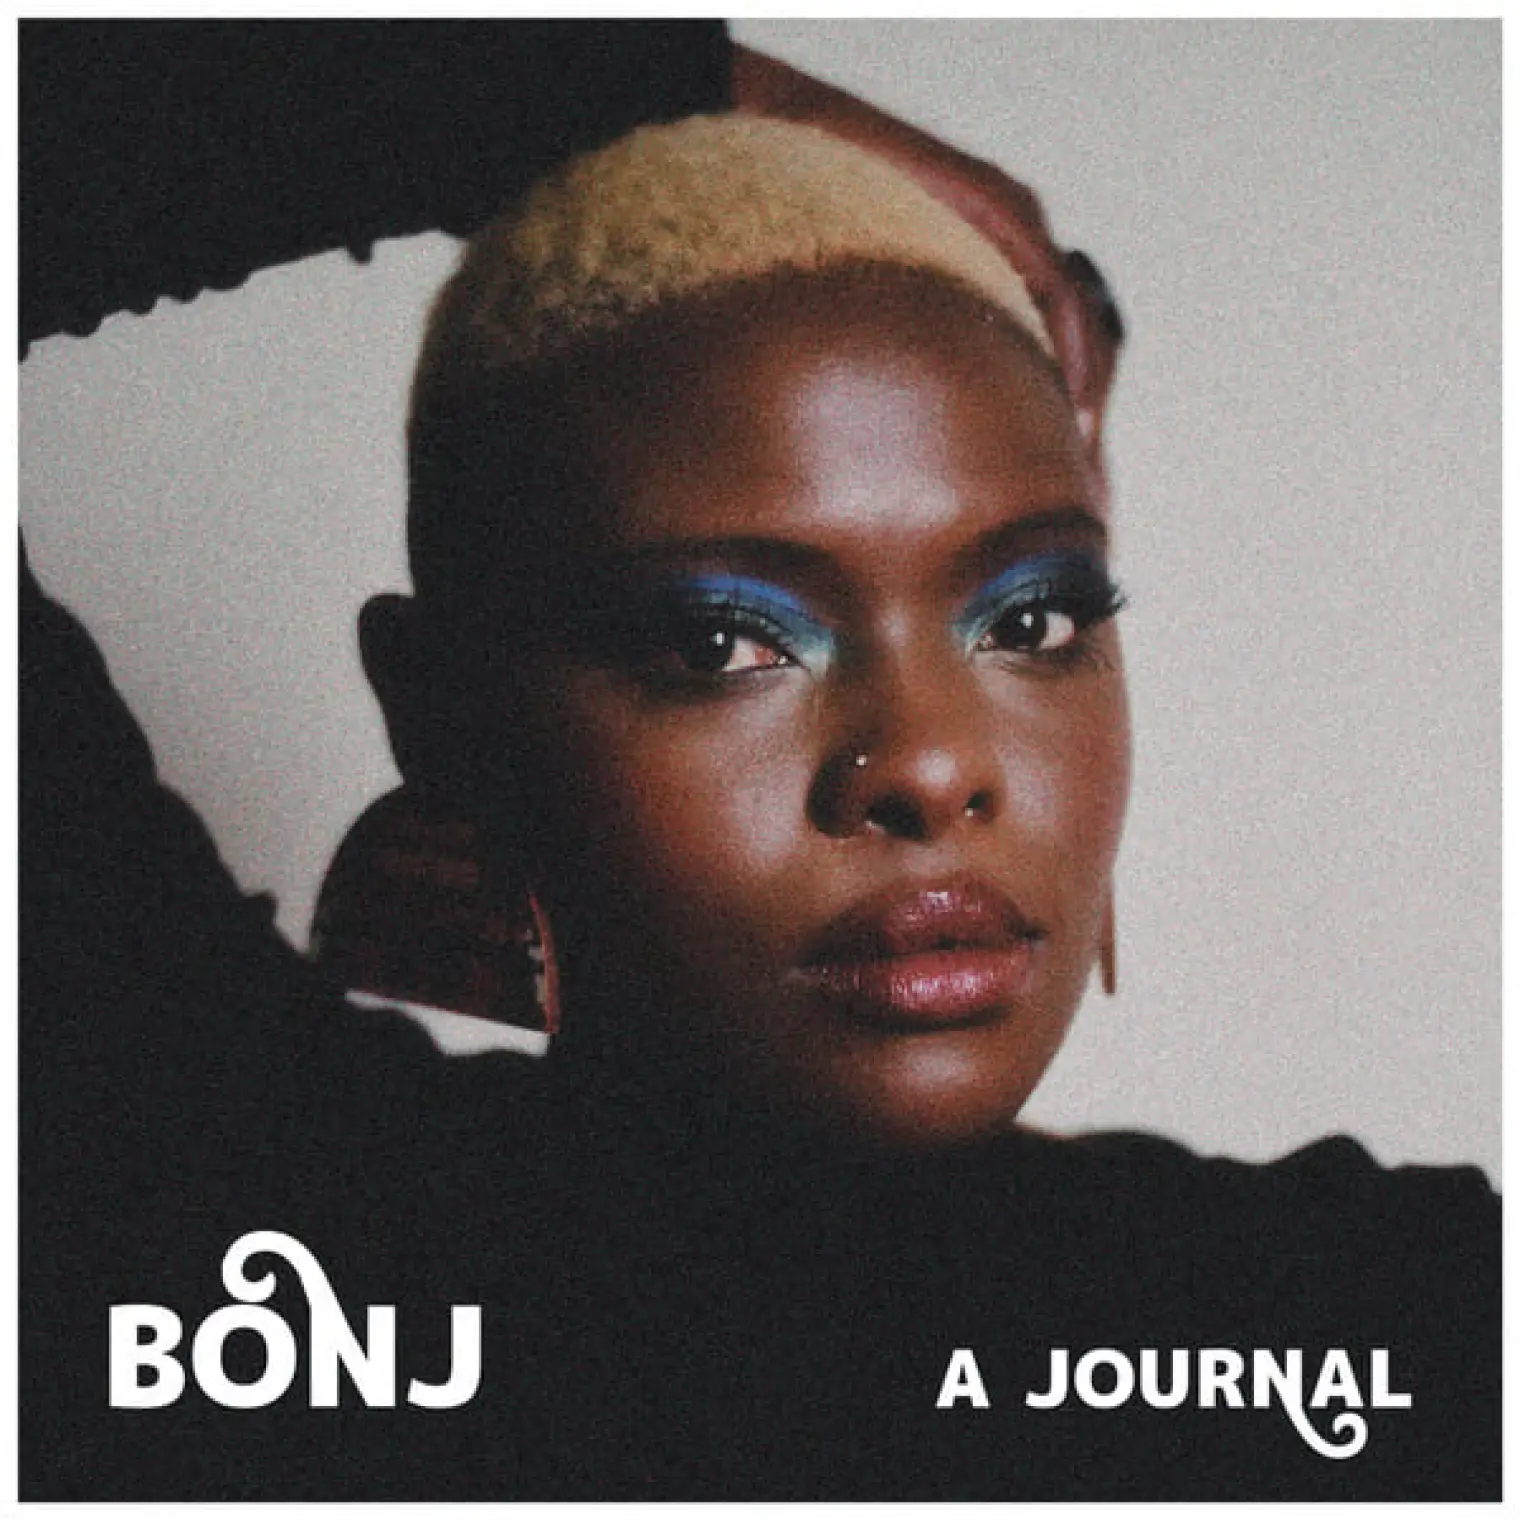 A Journal -  Bonj 